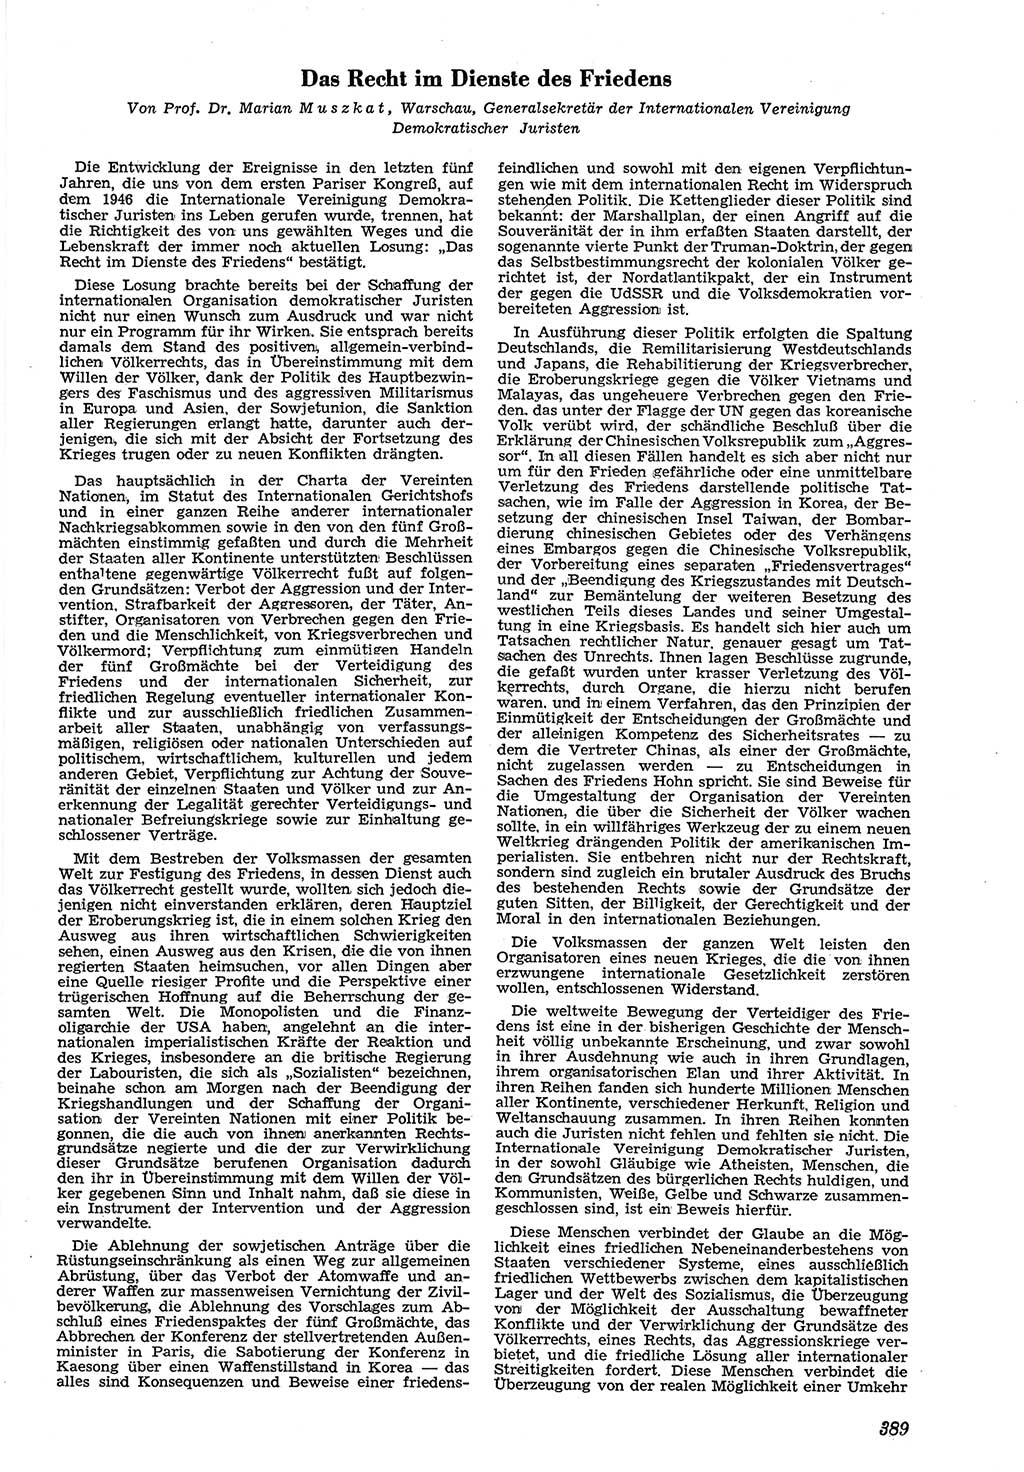 Neue Justiz (NJ), Zeitschrift für Recht und Rechtswissenschaft [Deutsche Demokratische Republik (DDR)], 5. Jahrgang 1951, Seite 389 (NJ DDR 1951, S. 389)